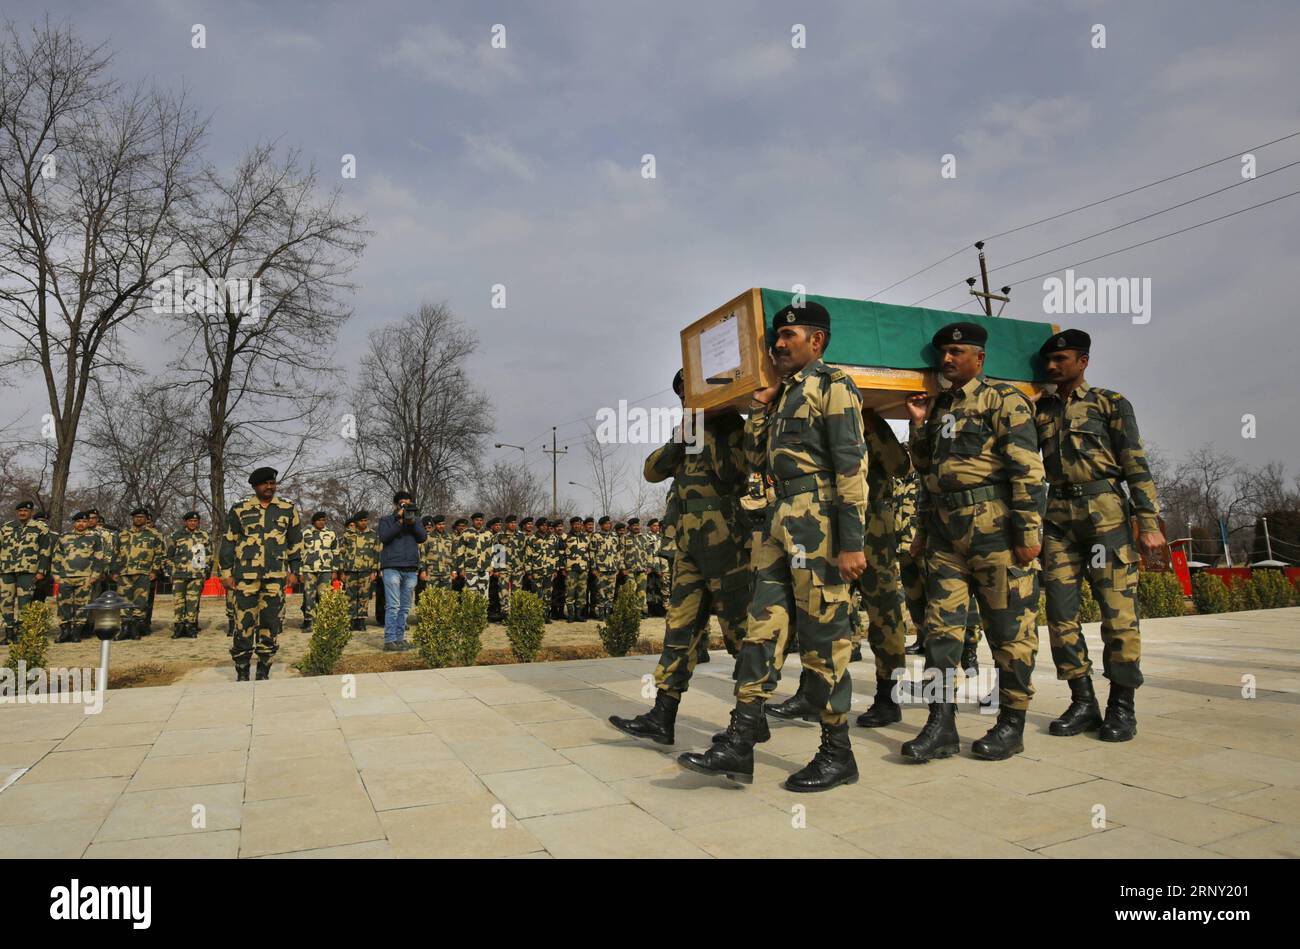 (180222) -- SRINAGAR, 22 febbraio 2018 -- le guardie di frontiera dell'India Border Security Force (BSF) trasportano la bara del loro collega durante la sua cerimonia di posa della corona nel loro campo base nella periferia della città di Srinagar, la capitale estiva del Kashmir controllato dagli indiani, 22 febbraio 2018. Una guardia di frontiera della BSF indiana è stata uccisa nel sparare al settore Tanghdar nel distretto di frontiera Kupwara sulla linea di controllo (Loc) che divide il Kashmir. (rh) CERIMONIA DI POSA DEL KASHMIR-SRINAGAR-WREATH JavedxDar PUBLICATIONxNOTxINxCHN Foto Stock